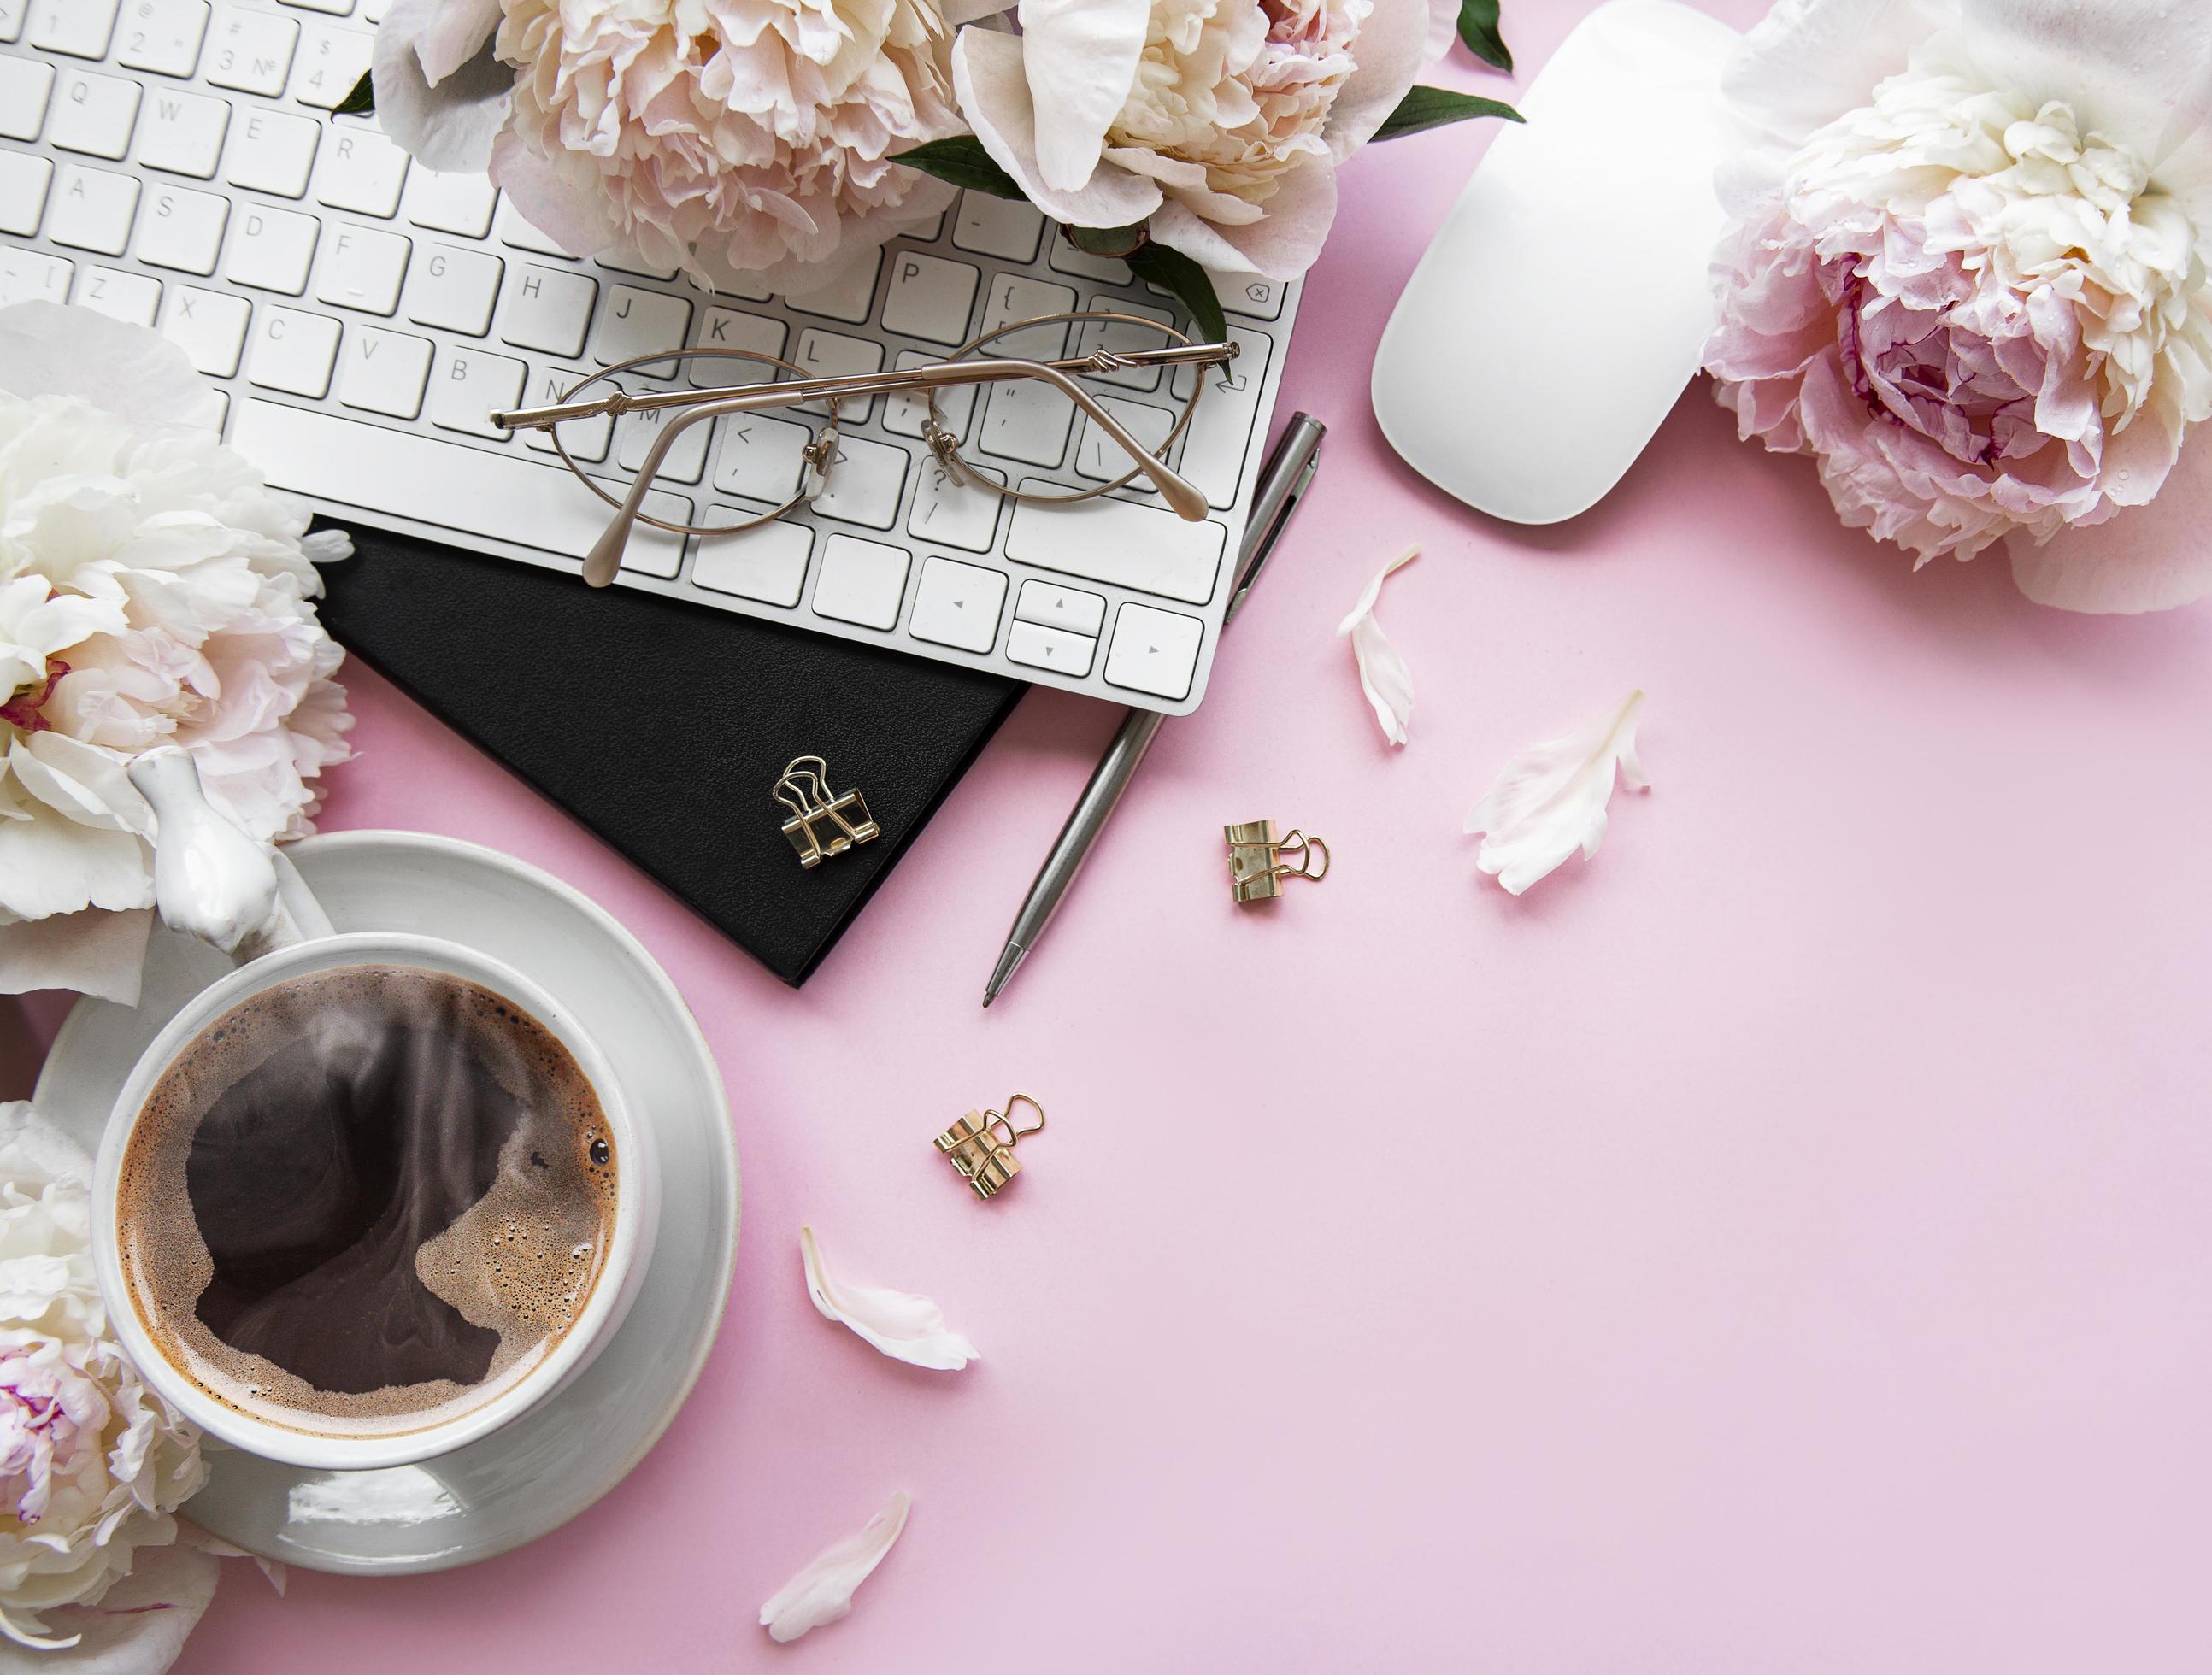 Tông màu hồng đem lại cảm giác tươi mới và sự độc đáo cho không gian văn phòng của bạn. Hãy cùng xem những hình ảnh đẹp mắt và lấy nguồn cảm hứng để cải thiện không gian làm việc của mình.